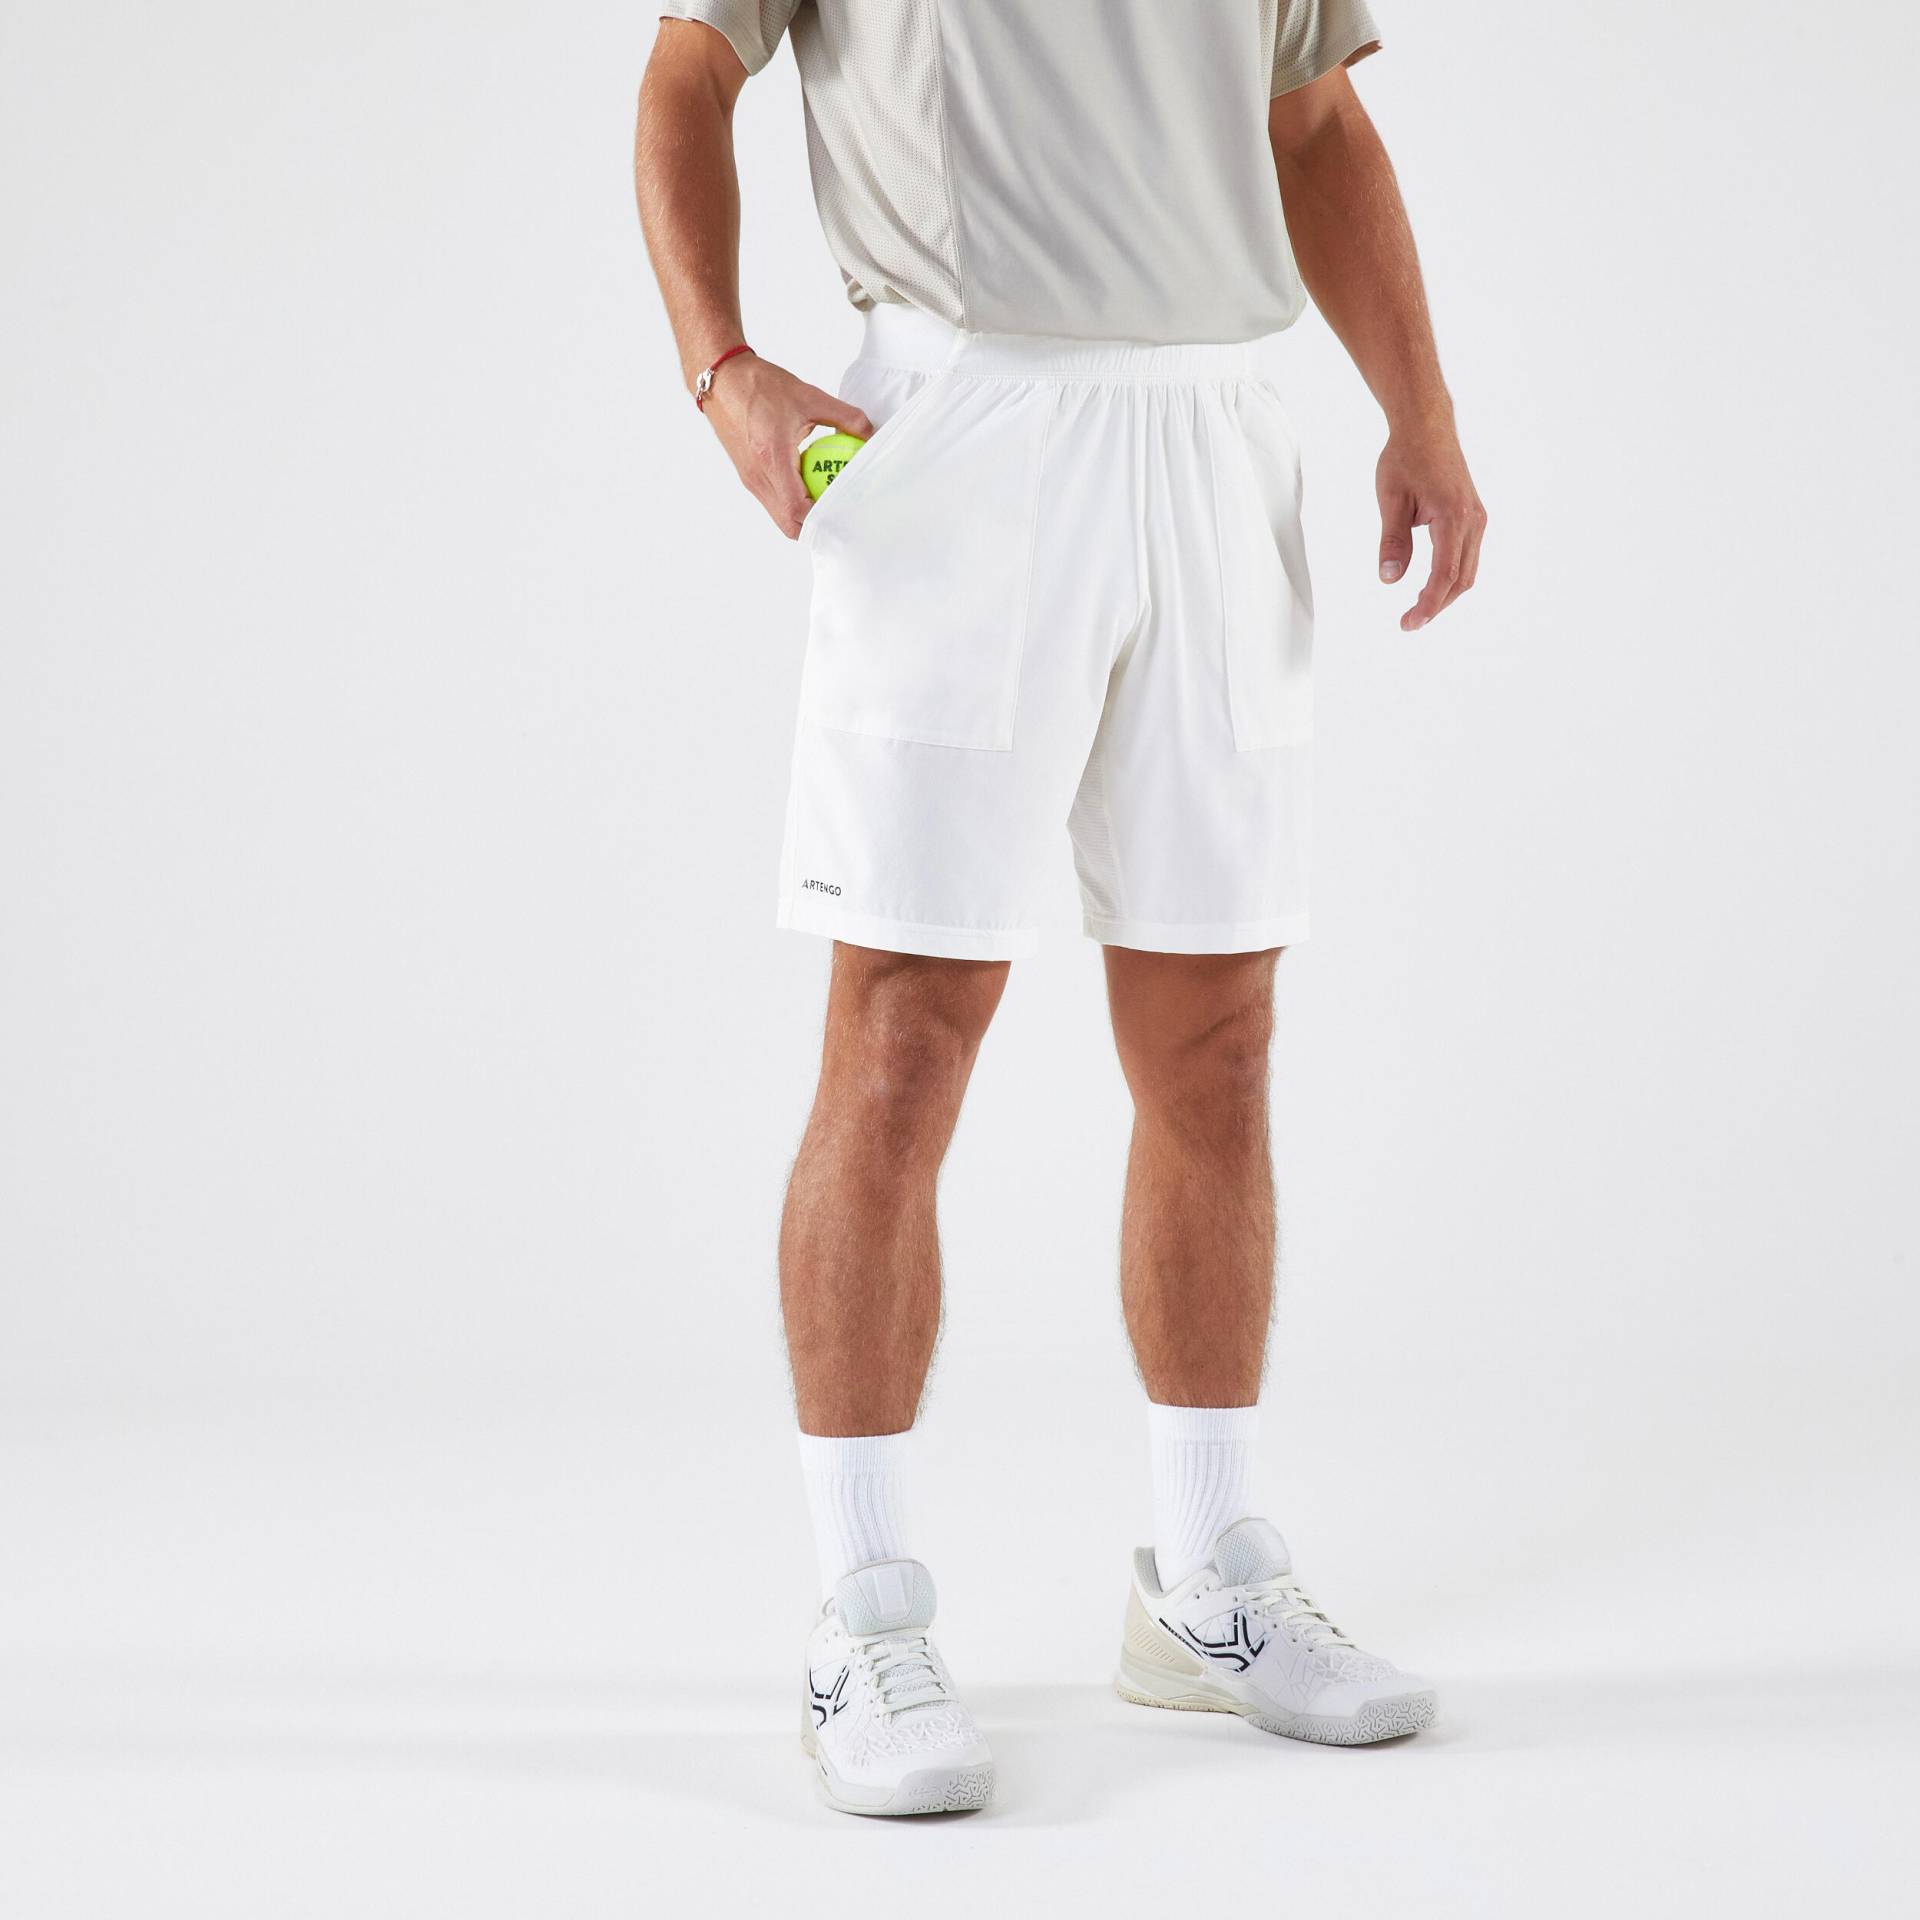 Herren Tennis Shorts atmungsaktiv - Artengo Dry weiss von ARTENGO